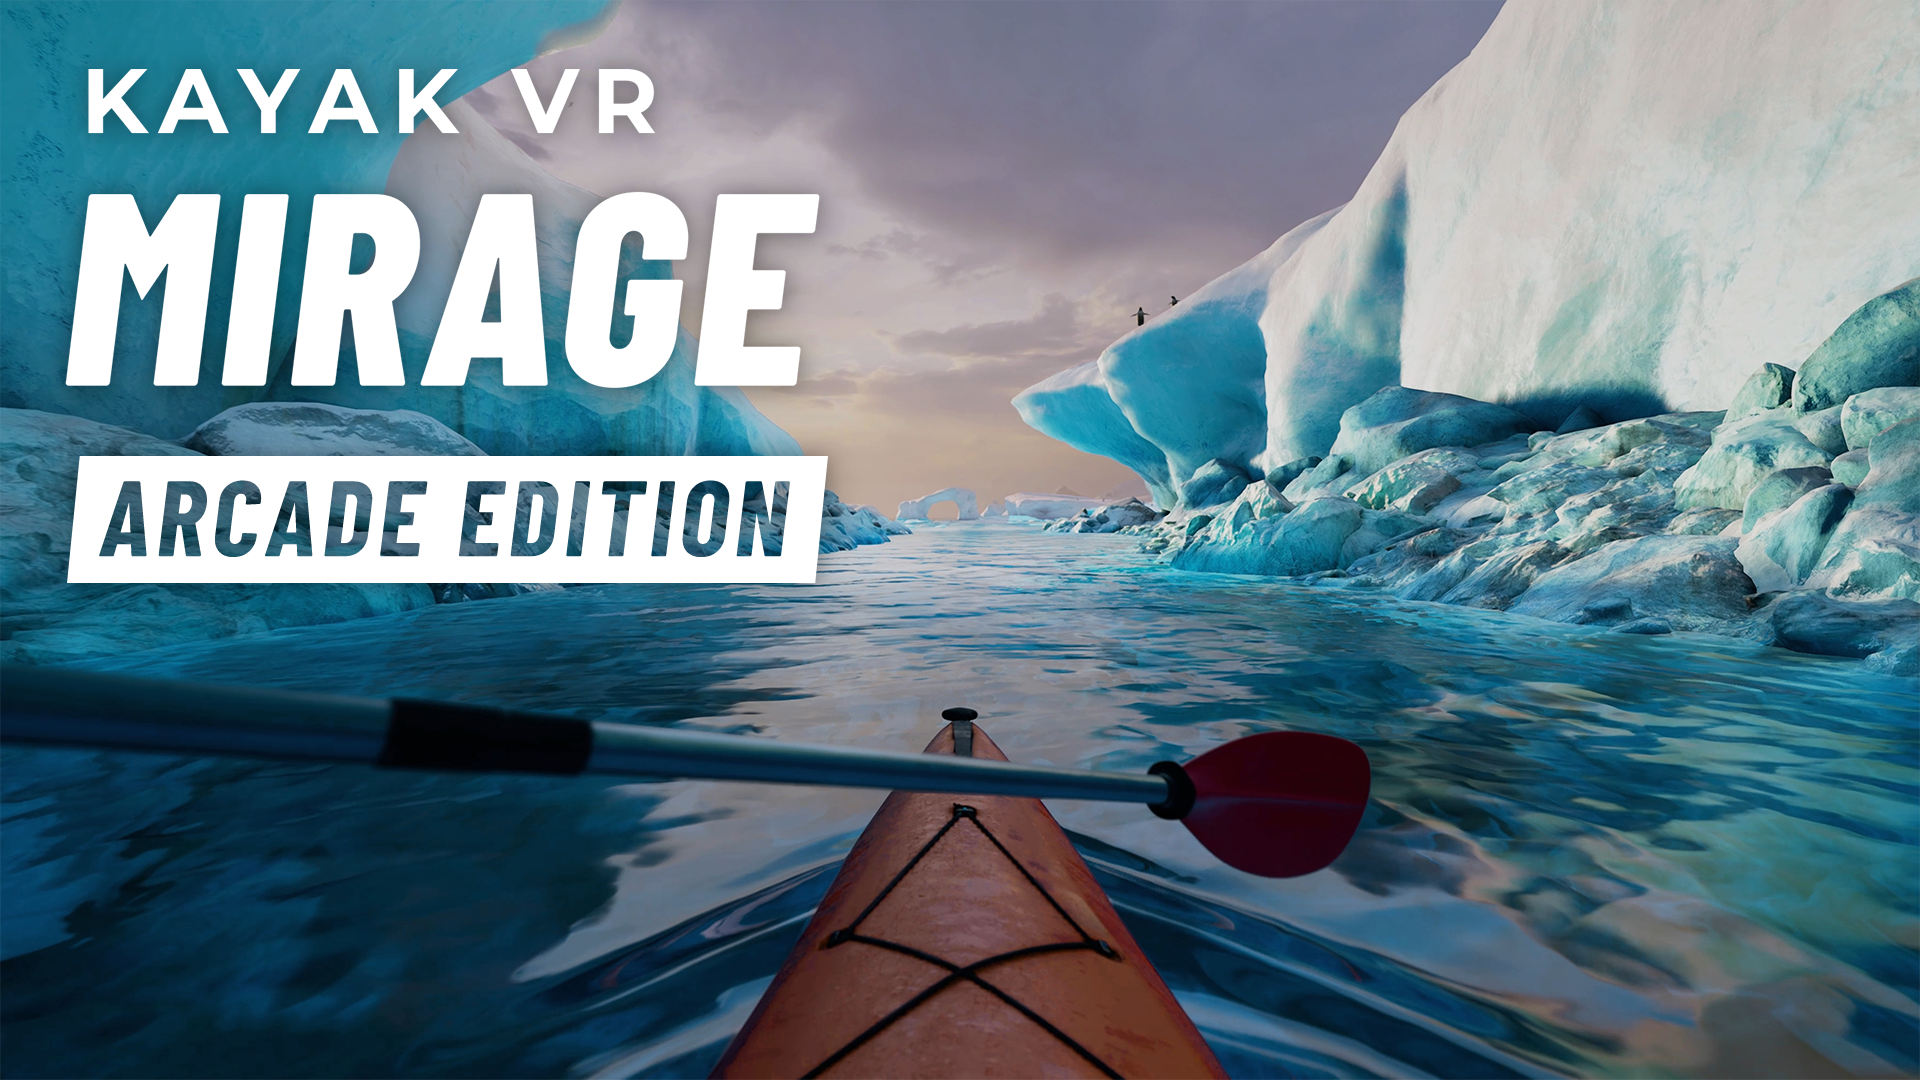 Kayak VR: Mirage Image